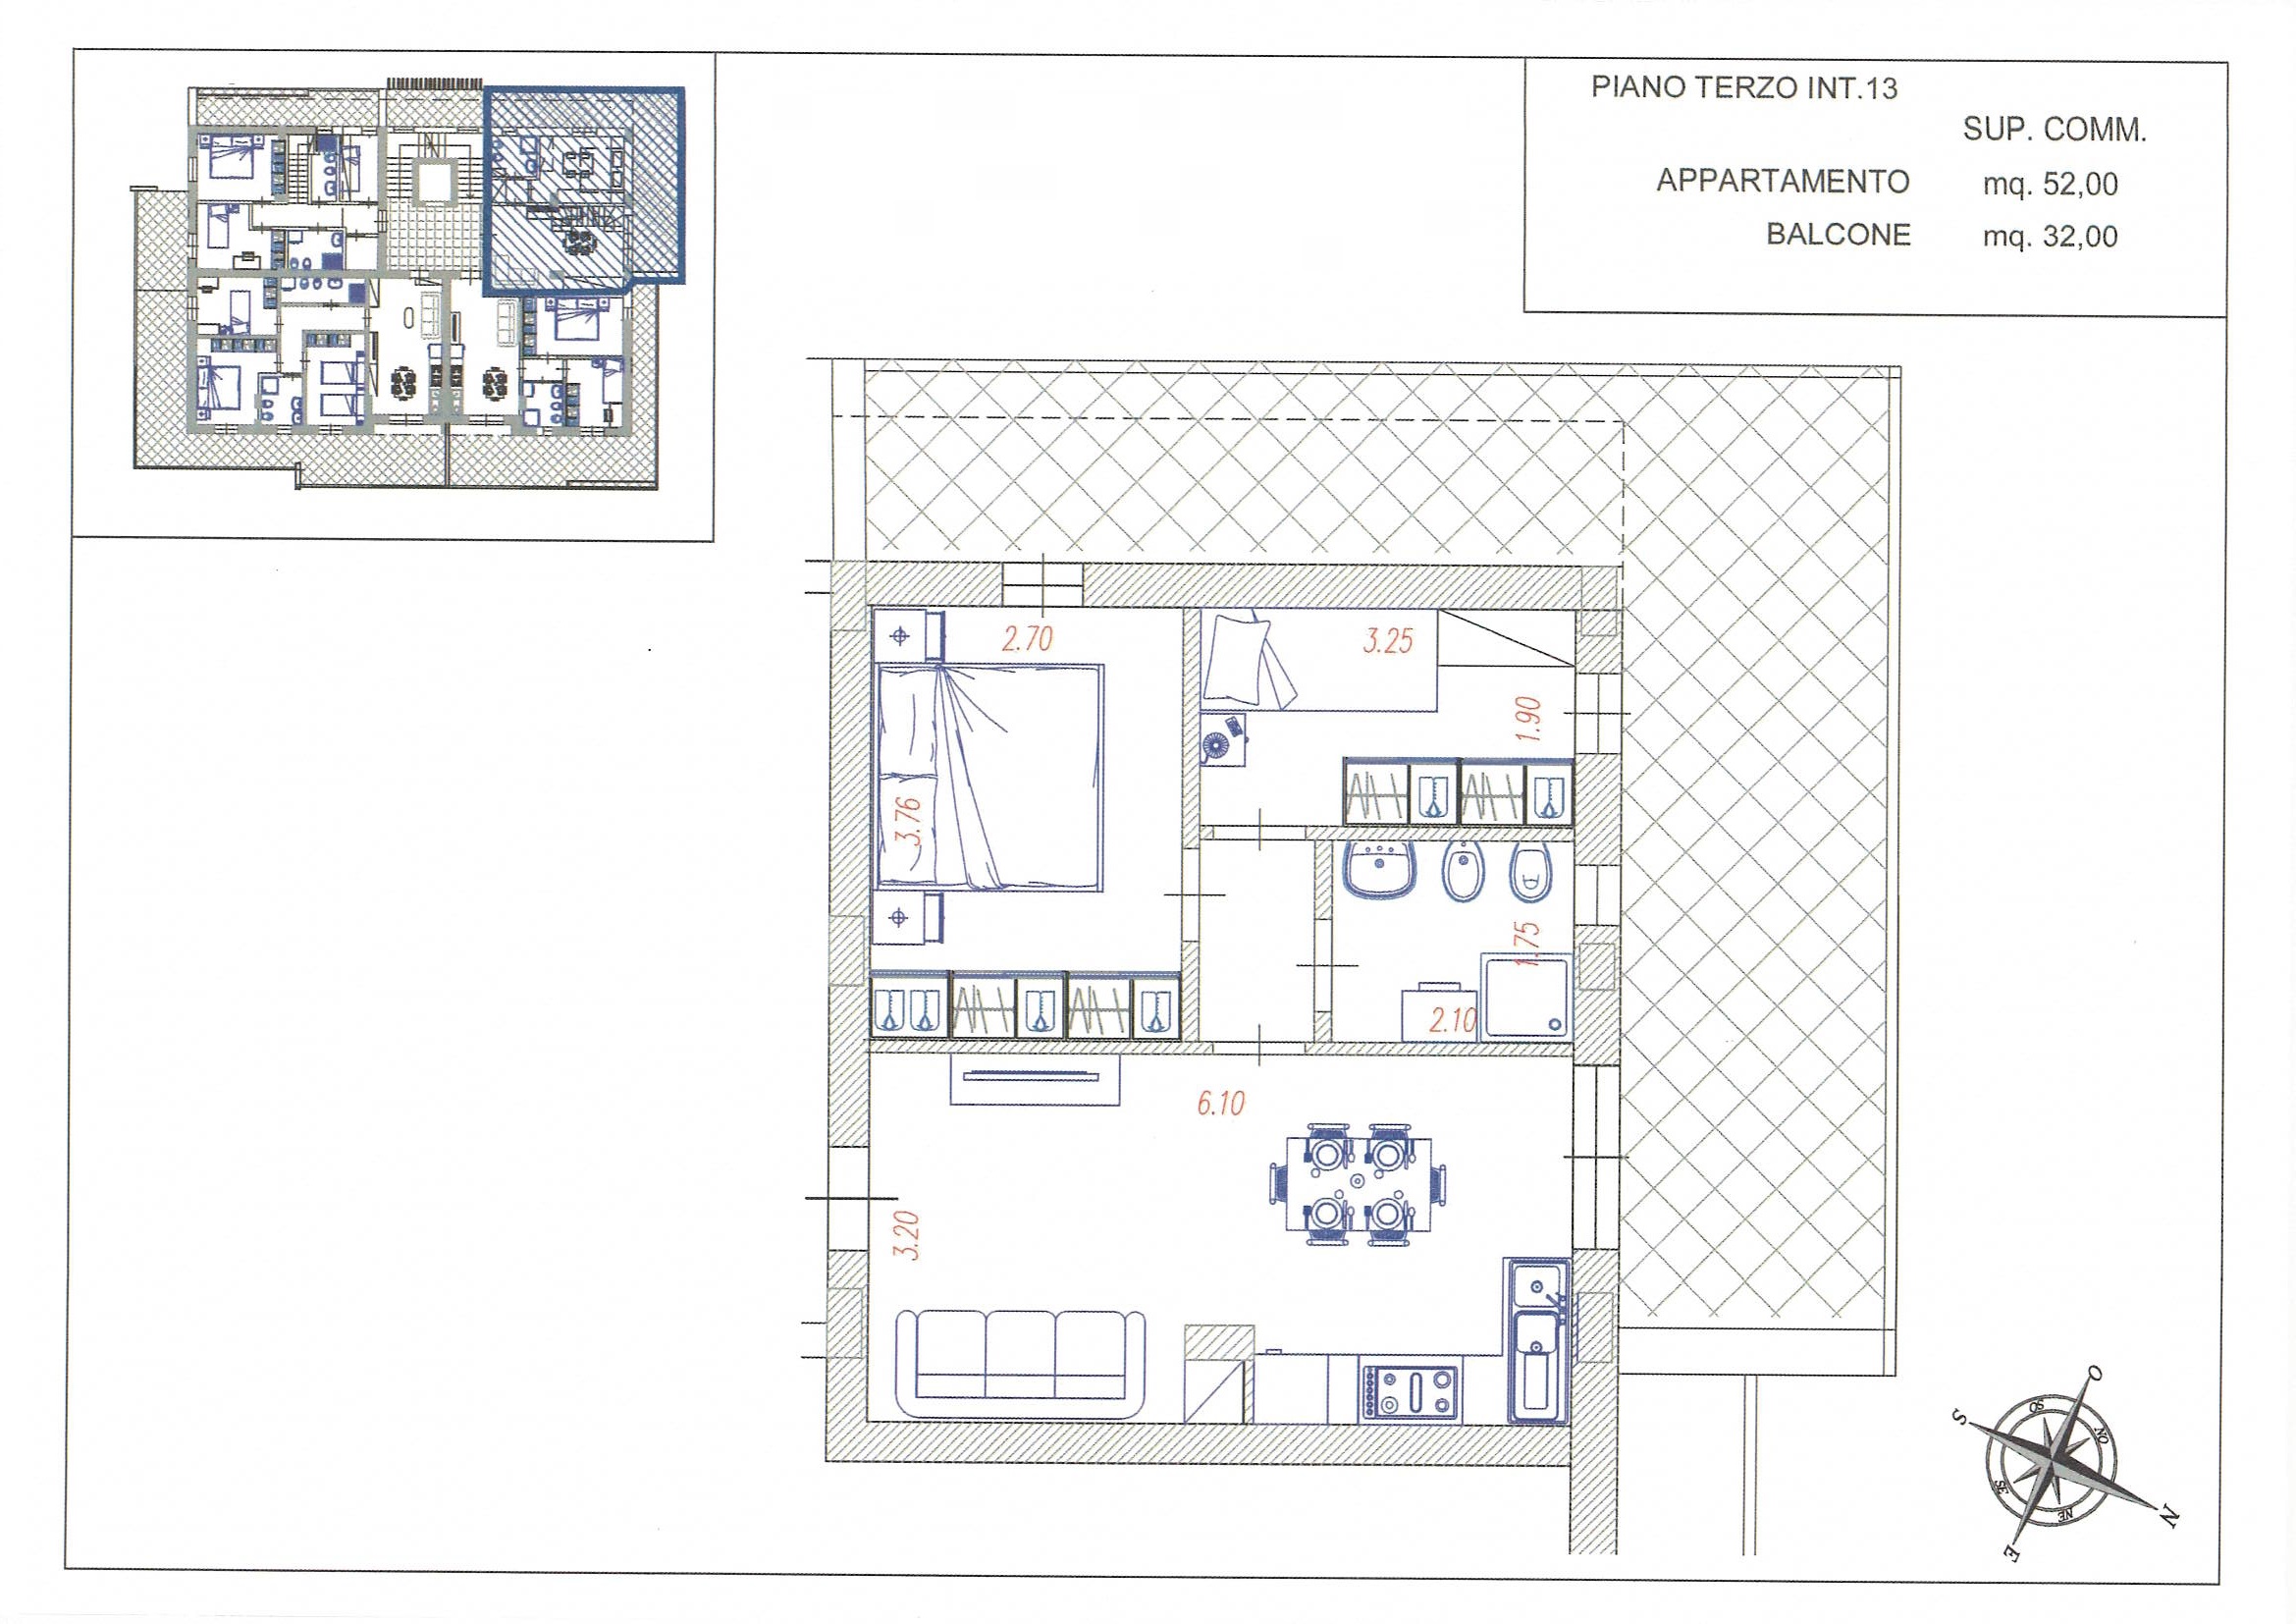 Appartamento in fase di realizzazione con due camere – terzo piano – R82/13